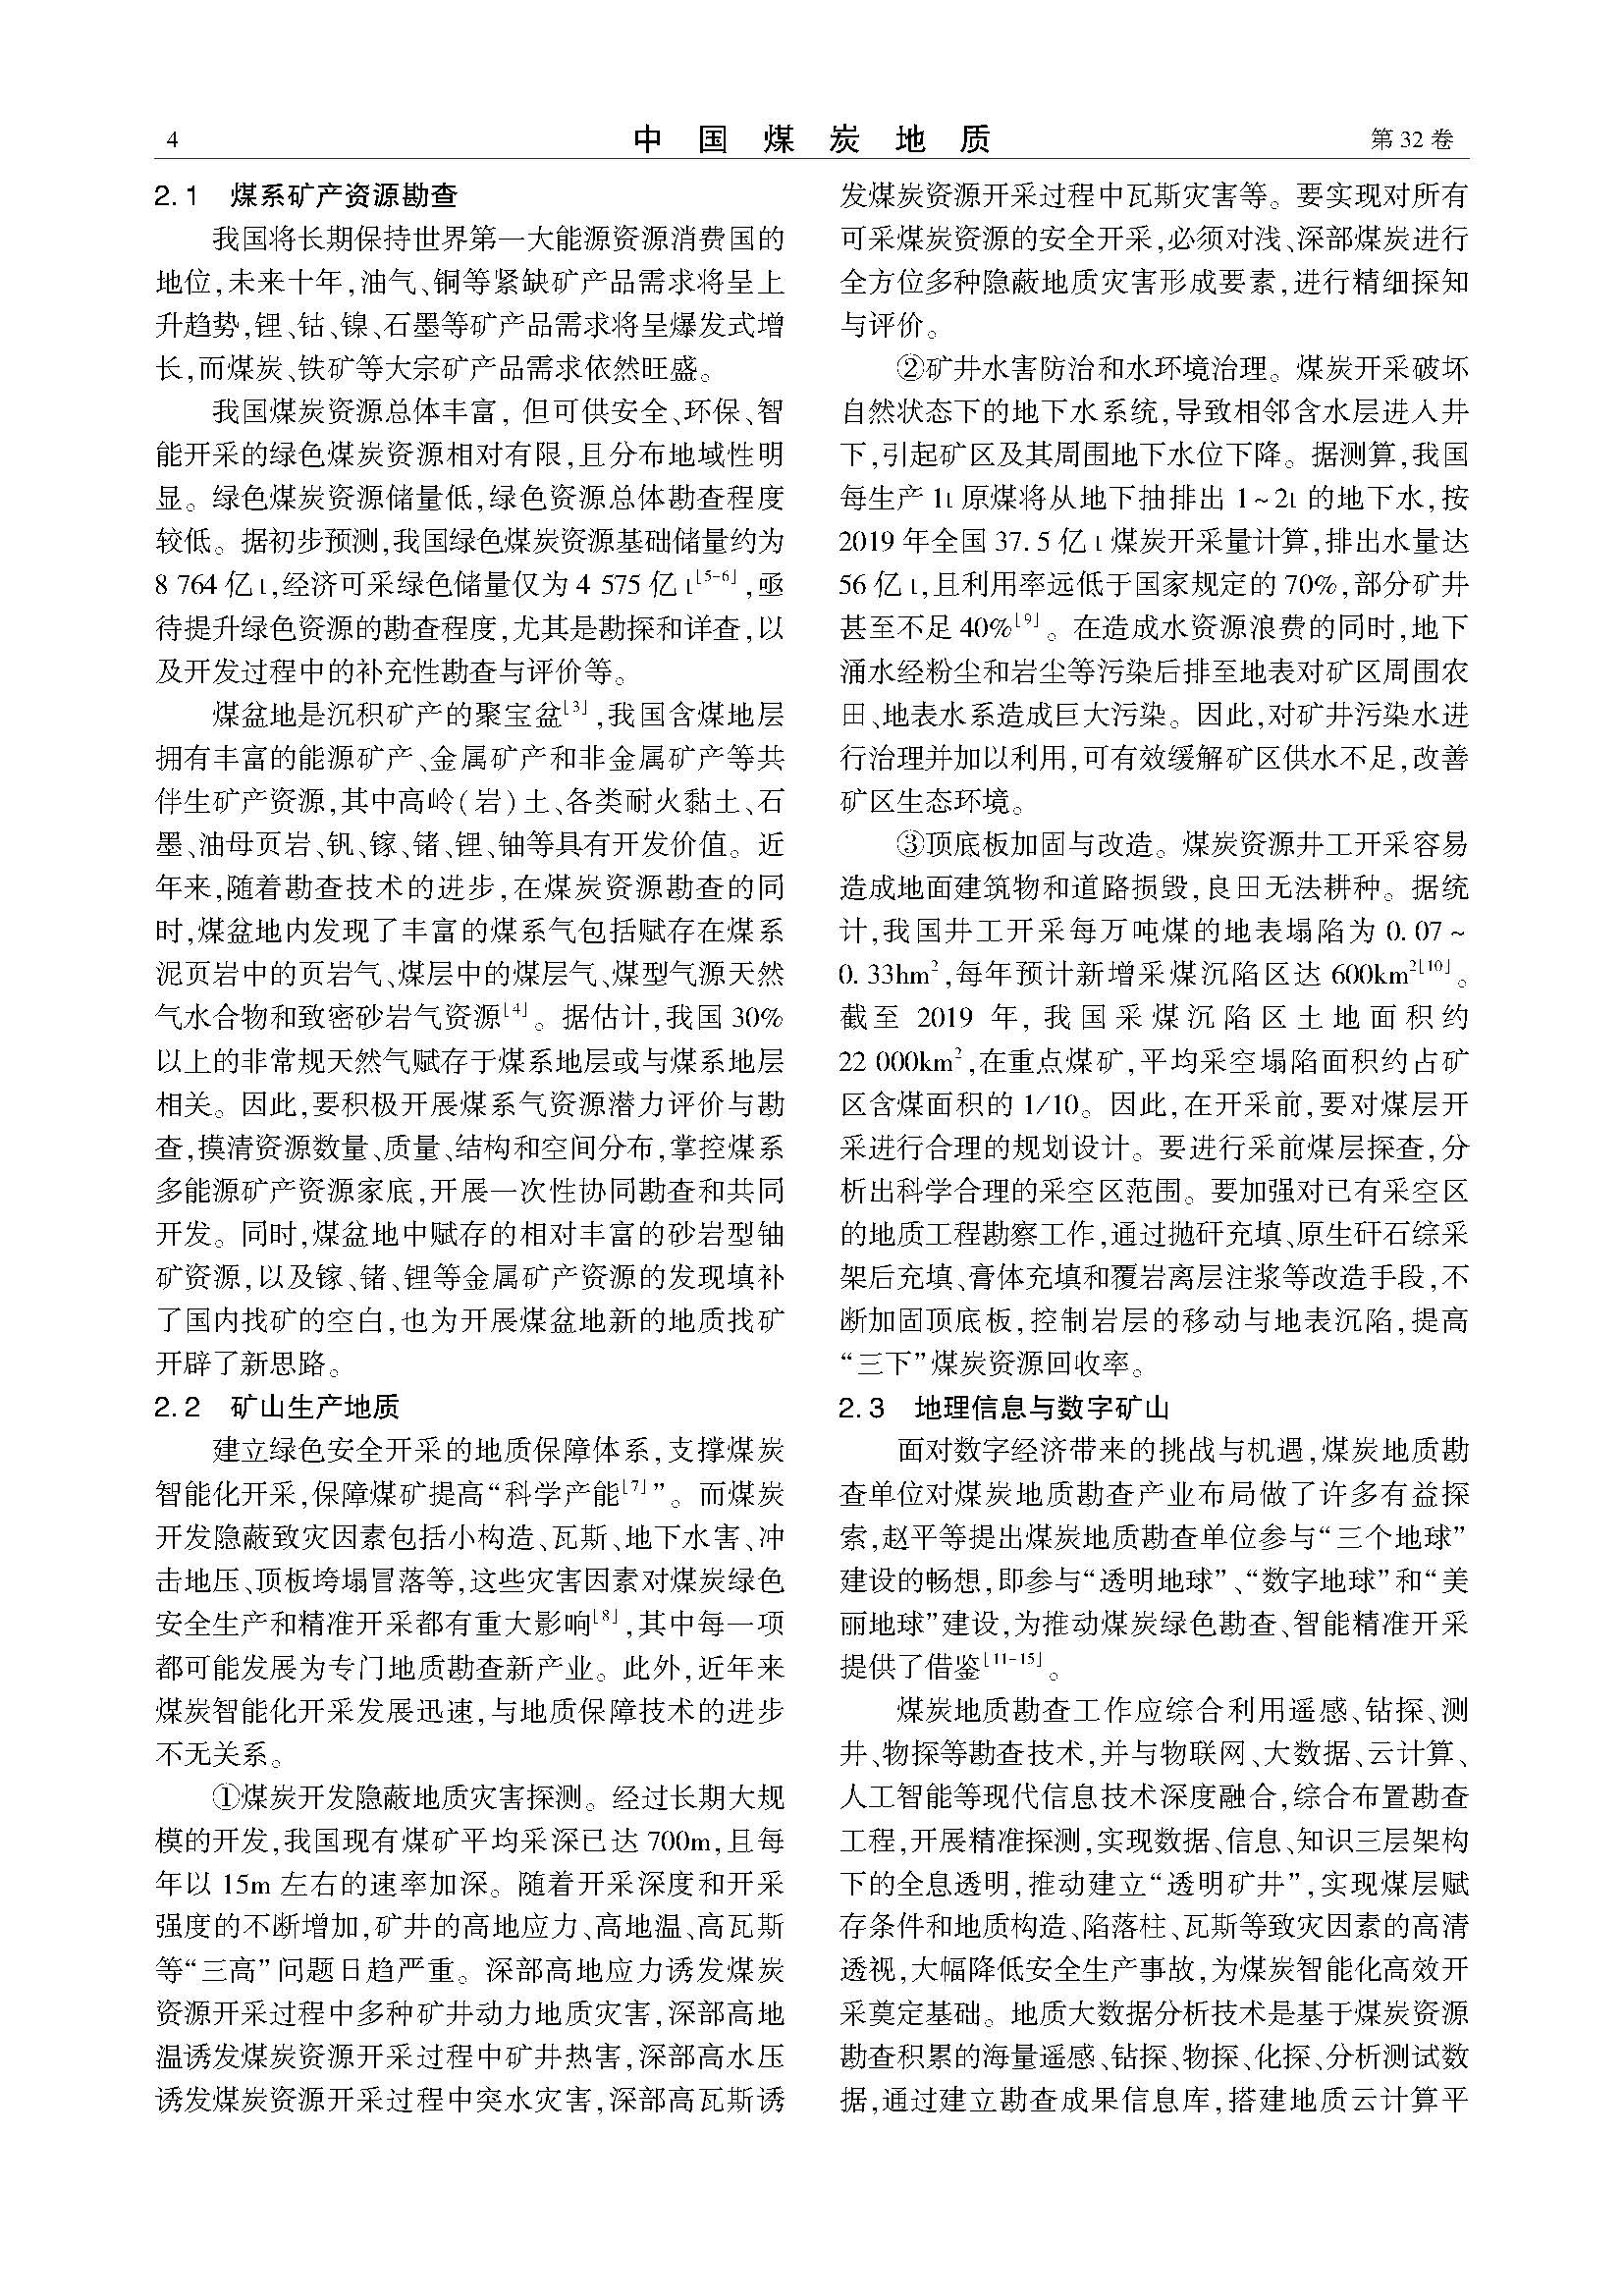 中国煤炭地质2020年第3期-侯慎建0603(1)(1)_页面_4.jpg